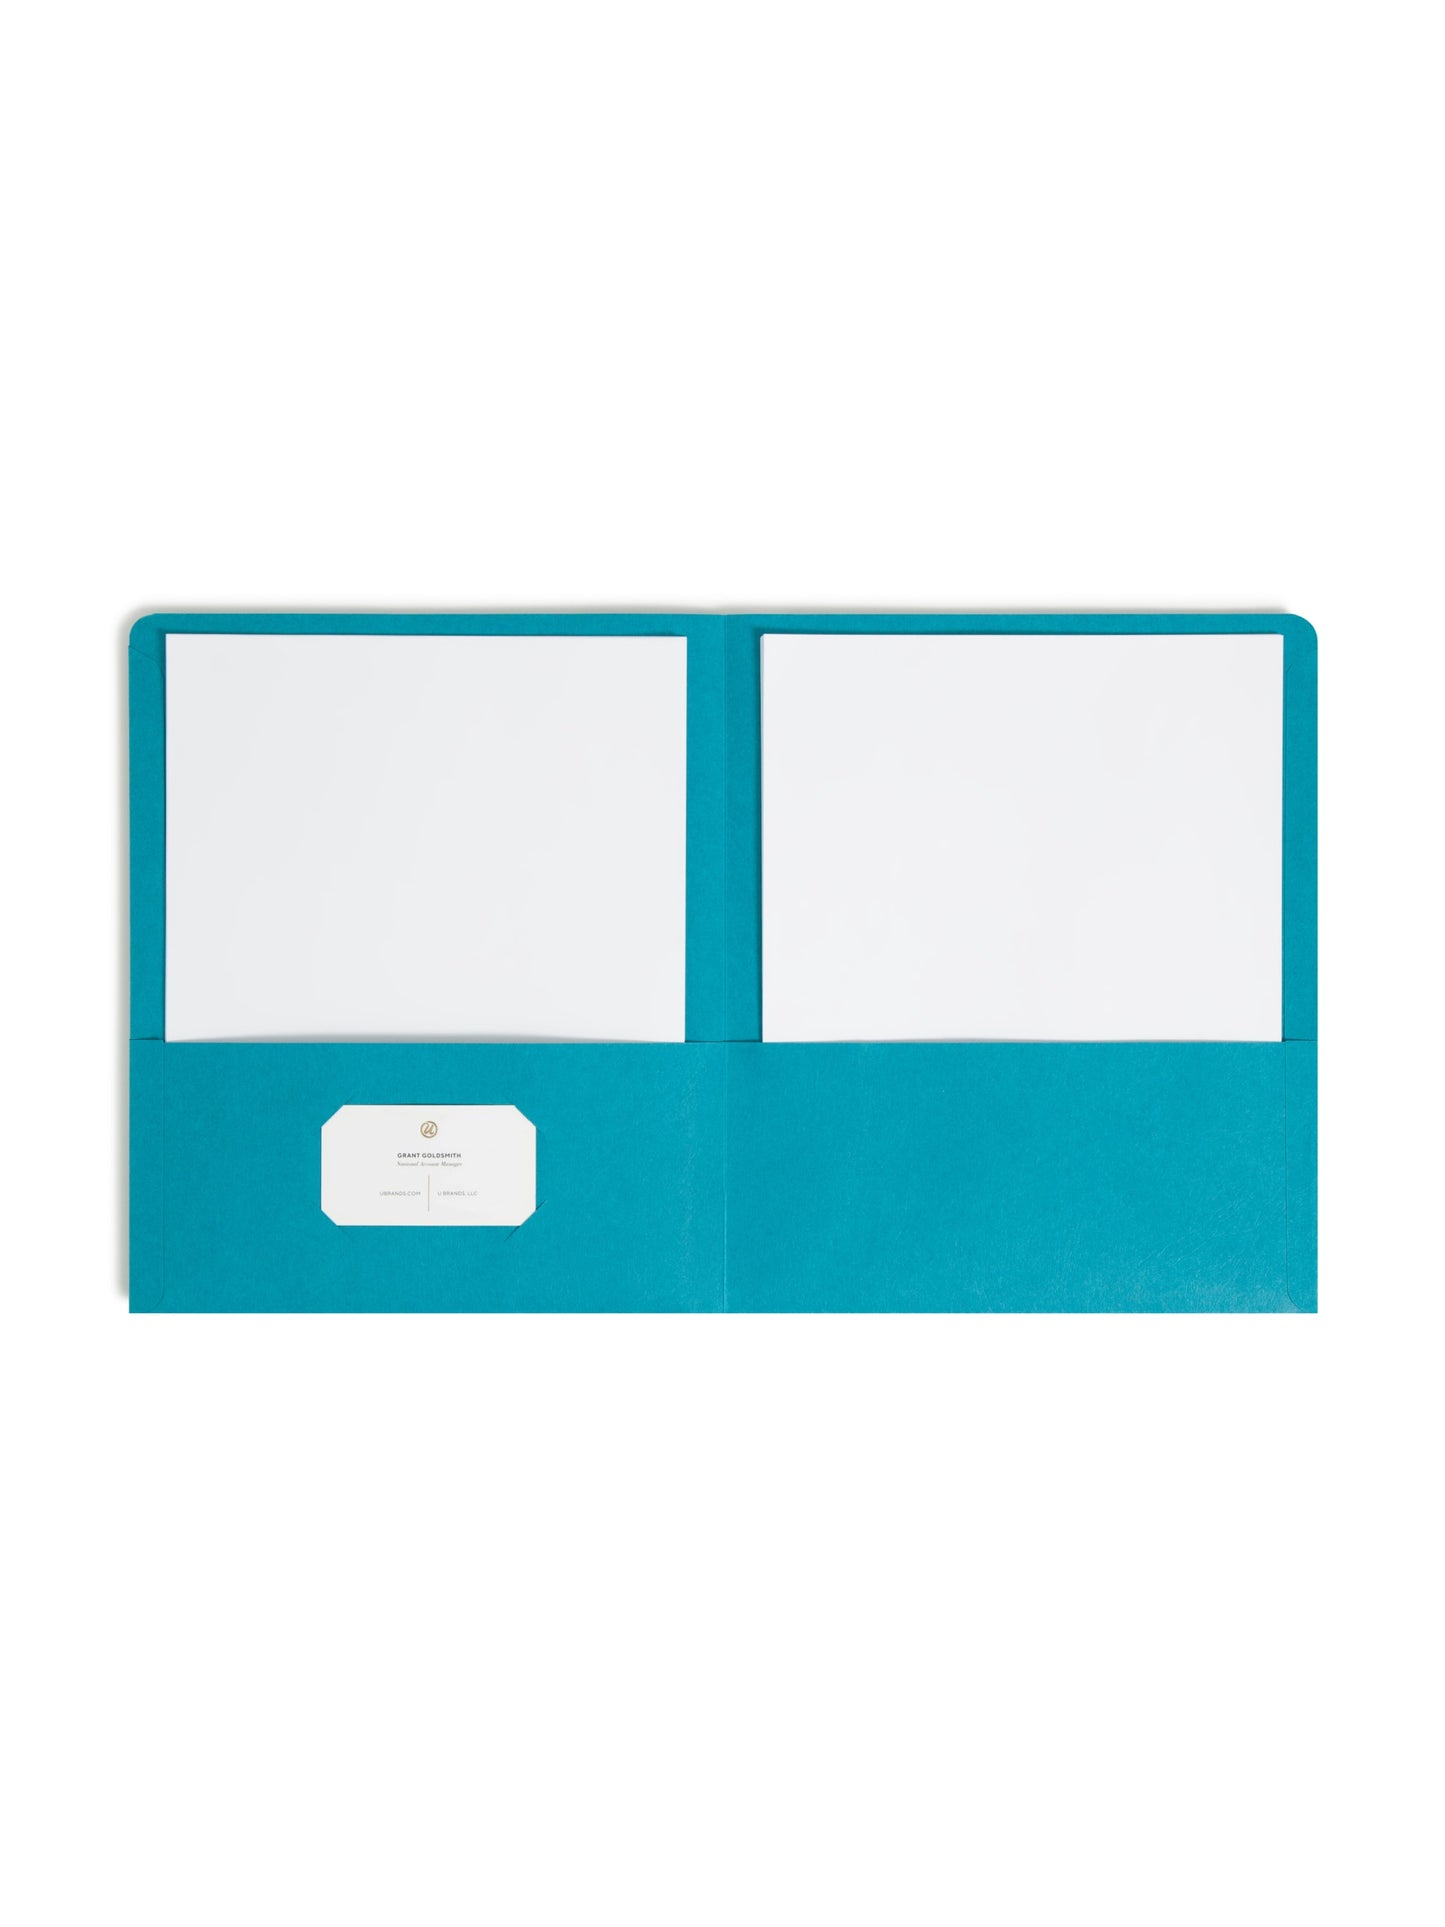 Standard Two-Pocket Folders, Teal Color, Letter Size, Set of 0, 30086486878679